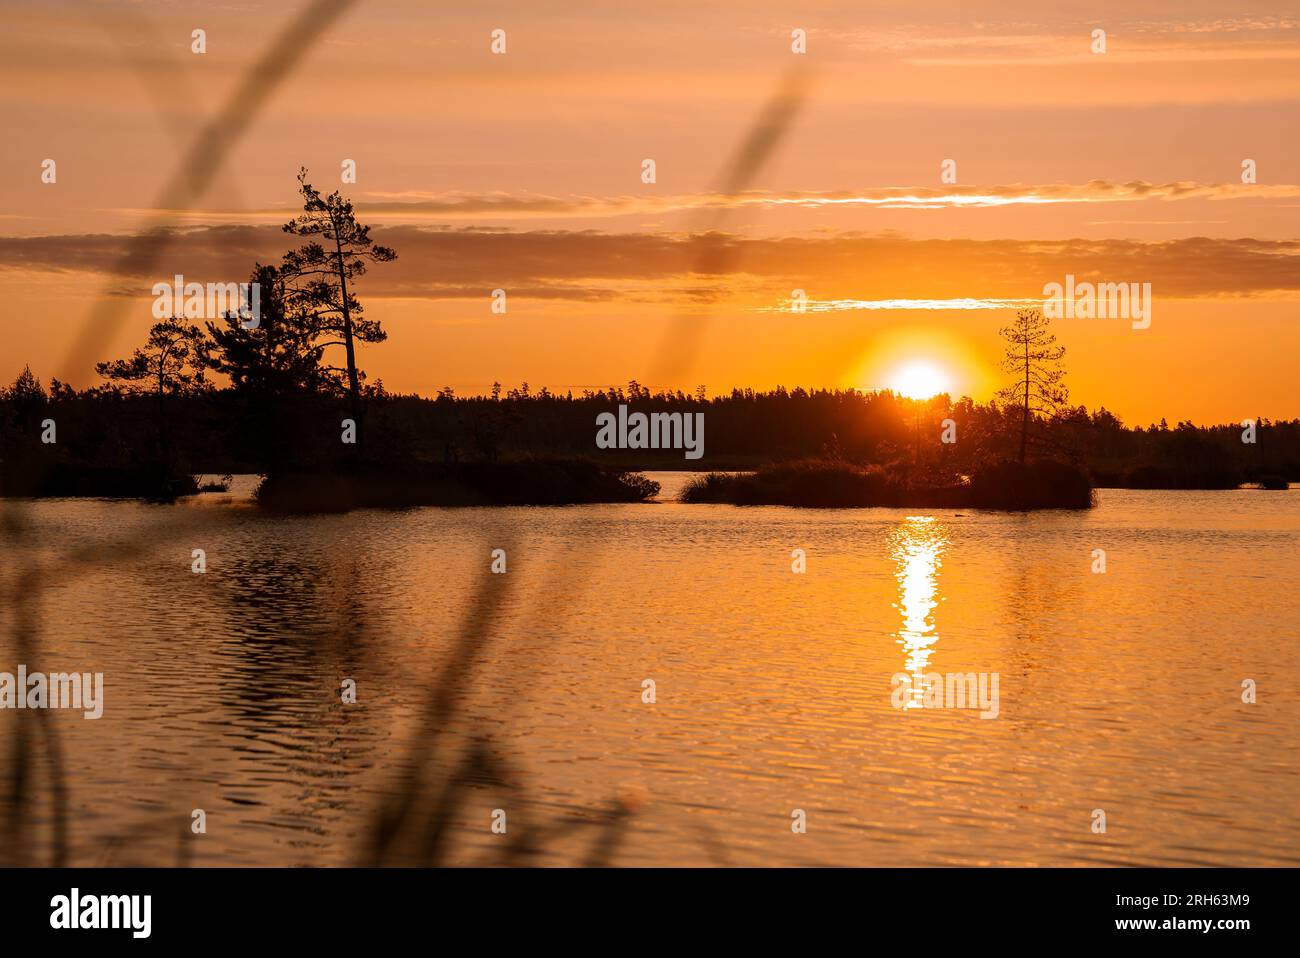 Magical sunrise over the lake.  Stock Photo